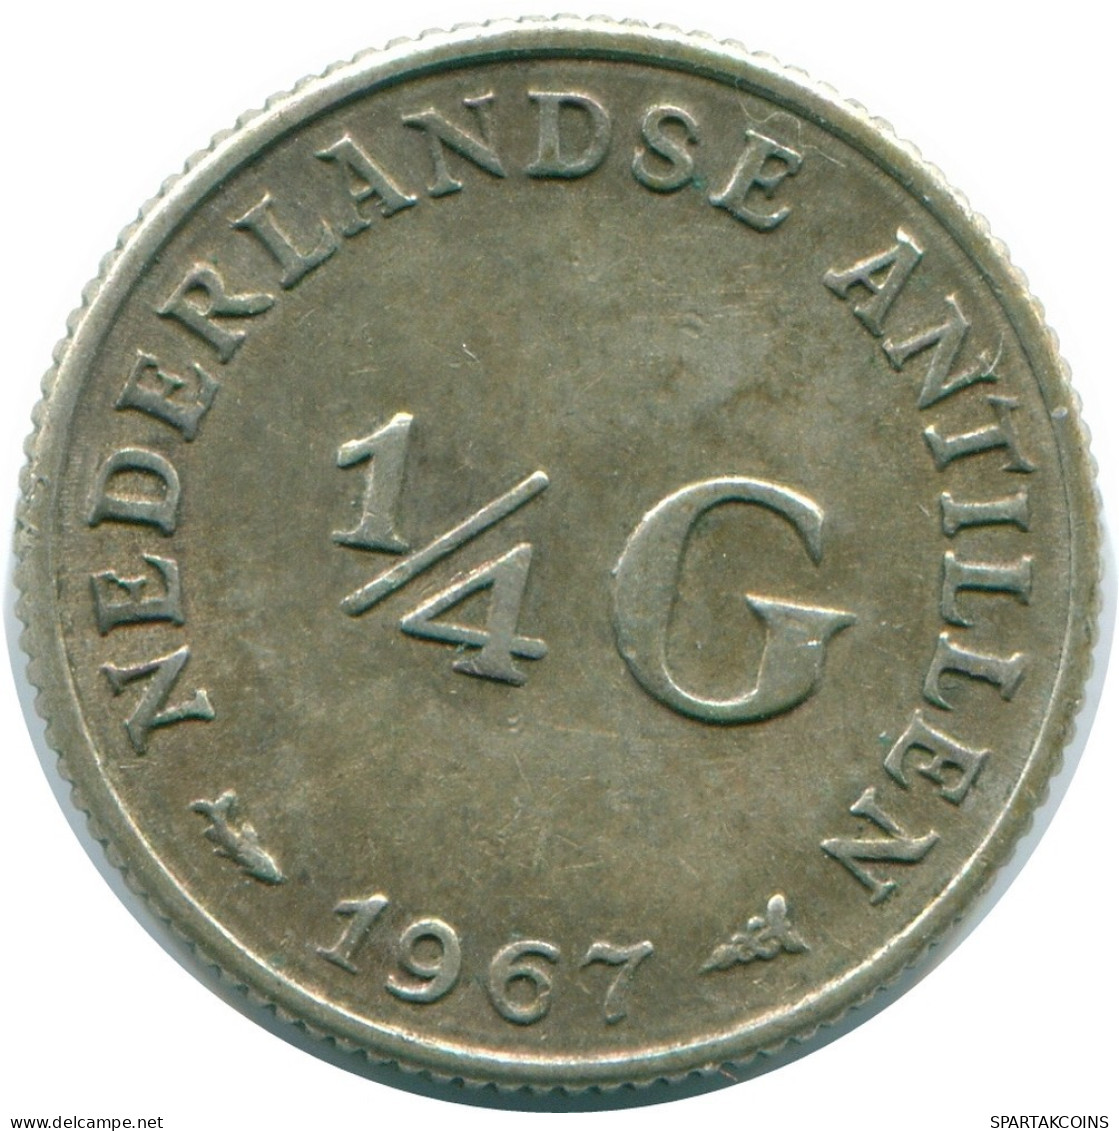 1/4 GULDEN 1967 NIEDERLÄNDISCHE ANTILLEN SILBER Koloniale Münze #NL11598.4.D.A - Antilles Néerlandaises